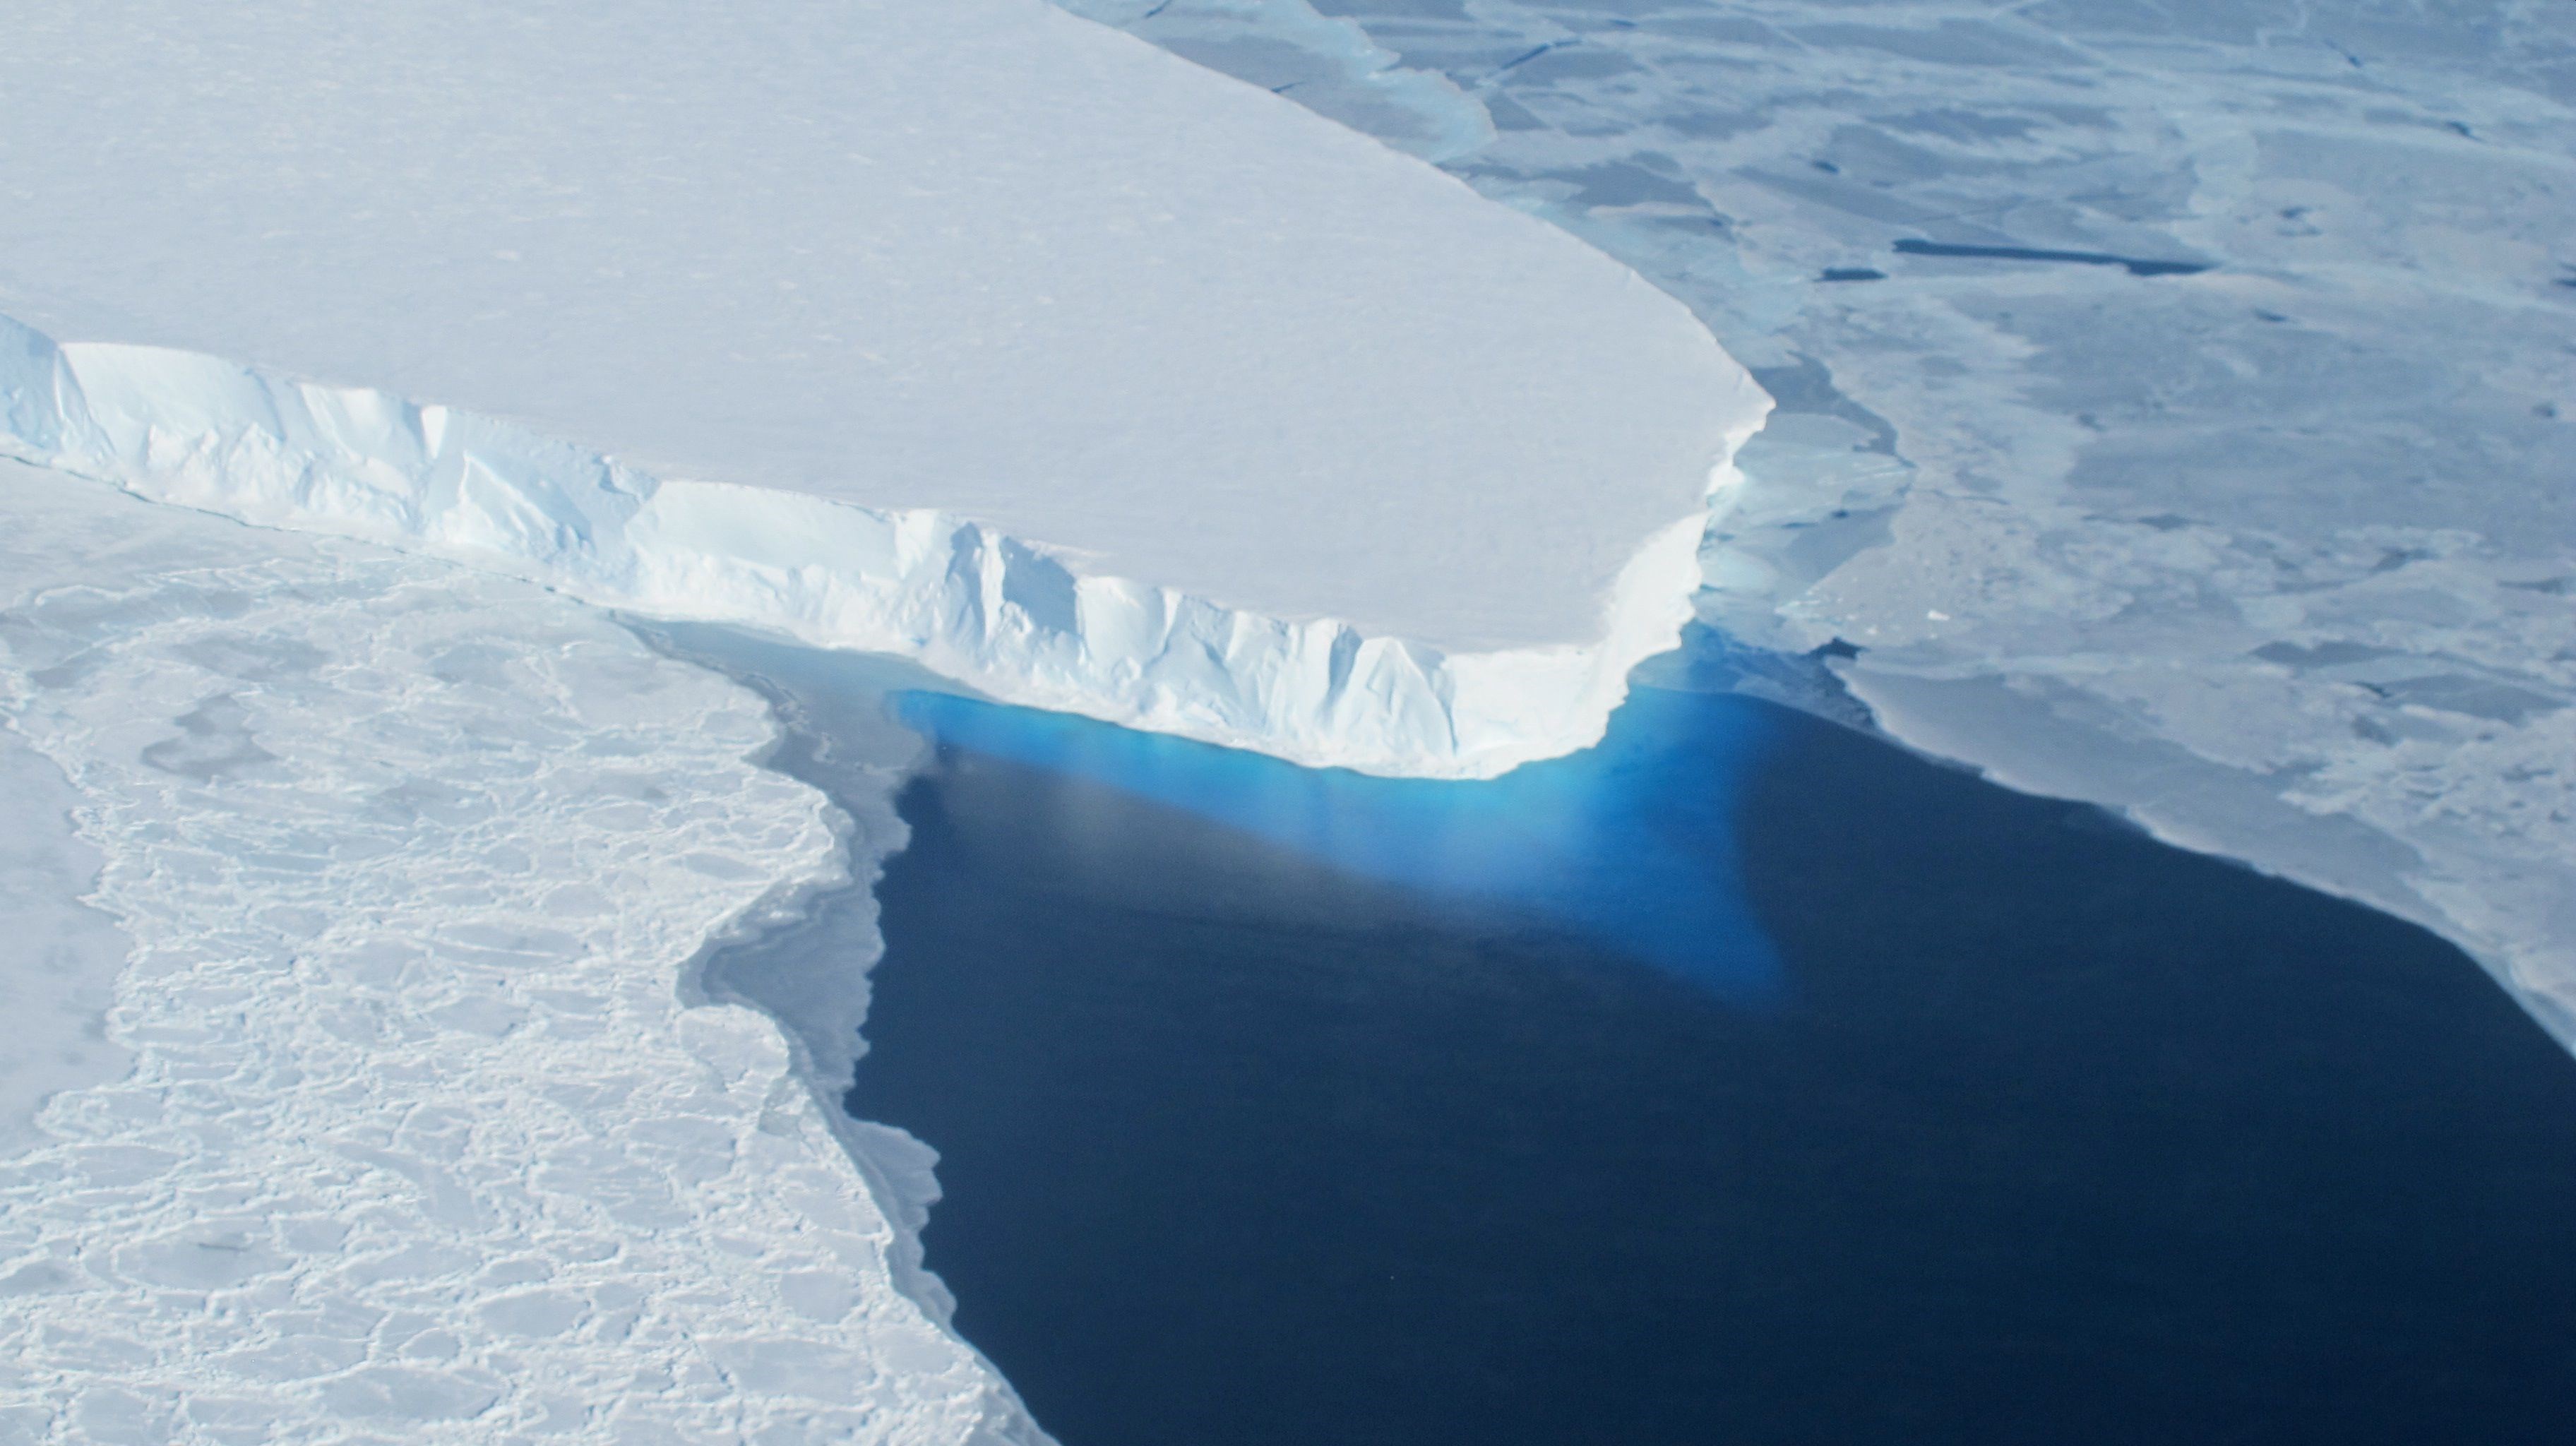 Kıyamet Buzulu kopmak üzere: Dünya'yı bekleyen tehlike ne?